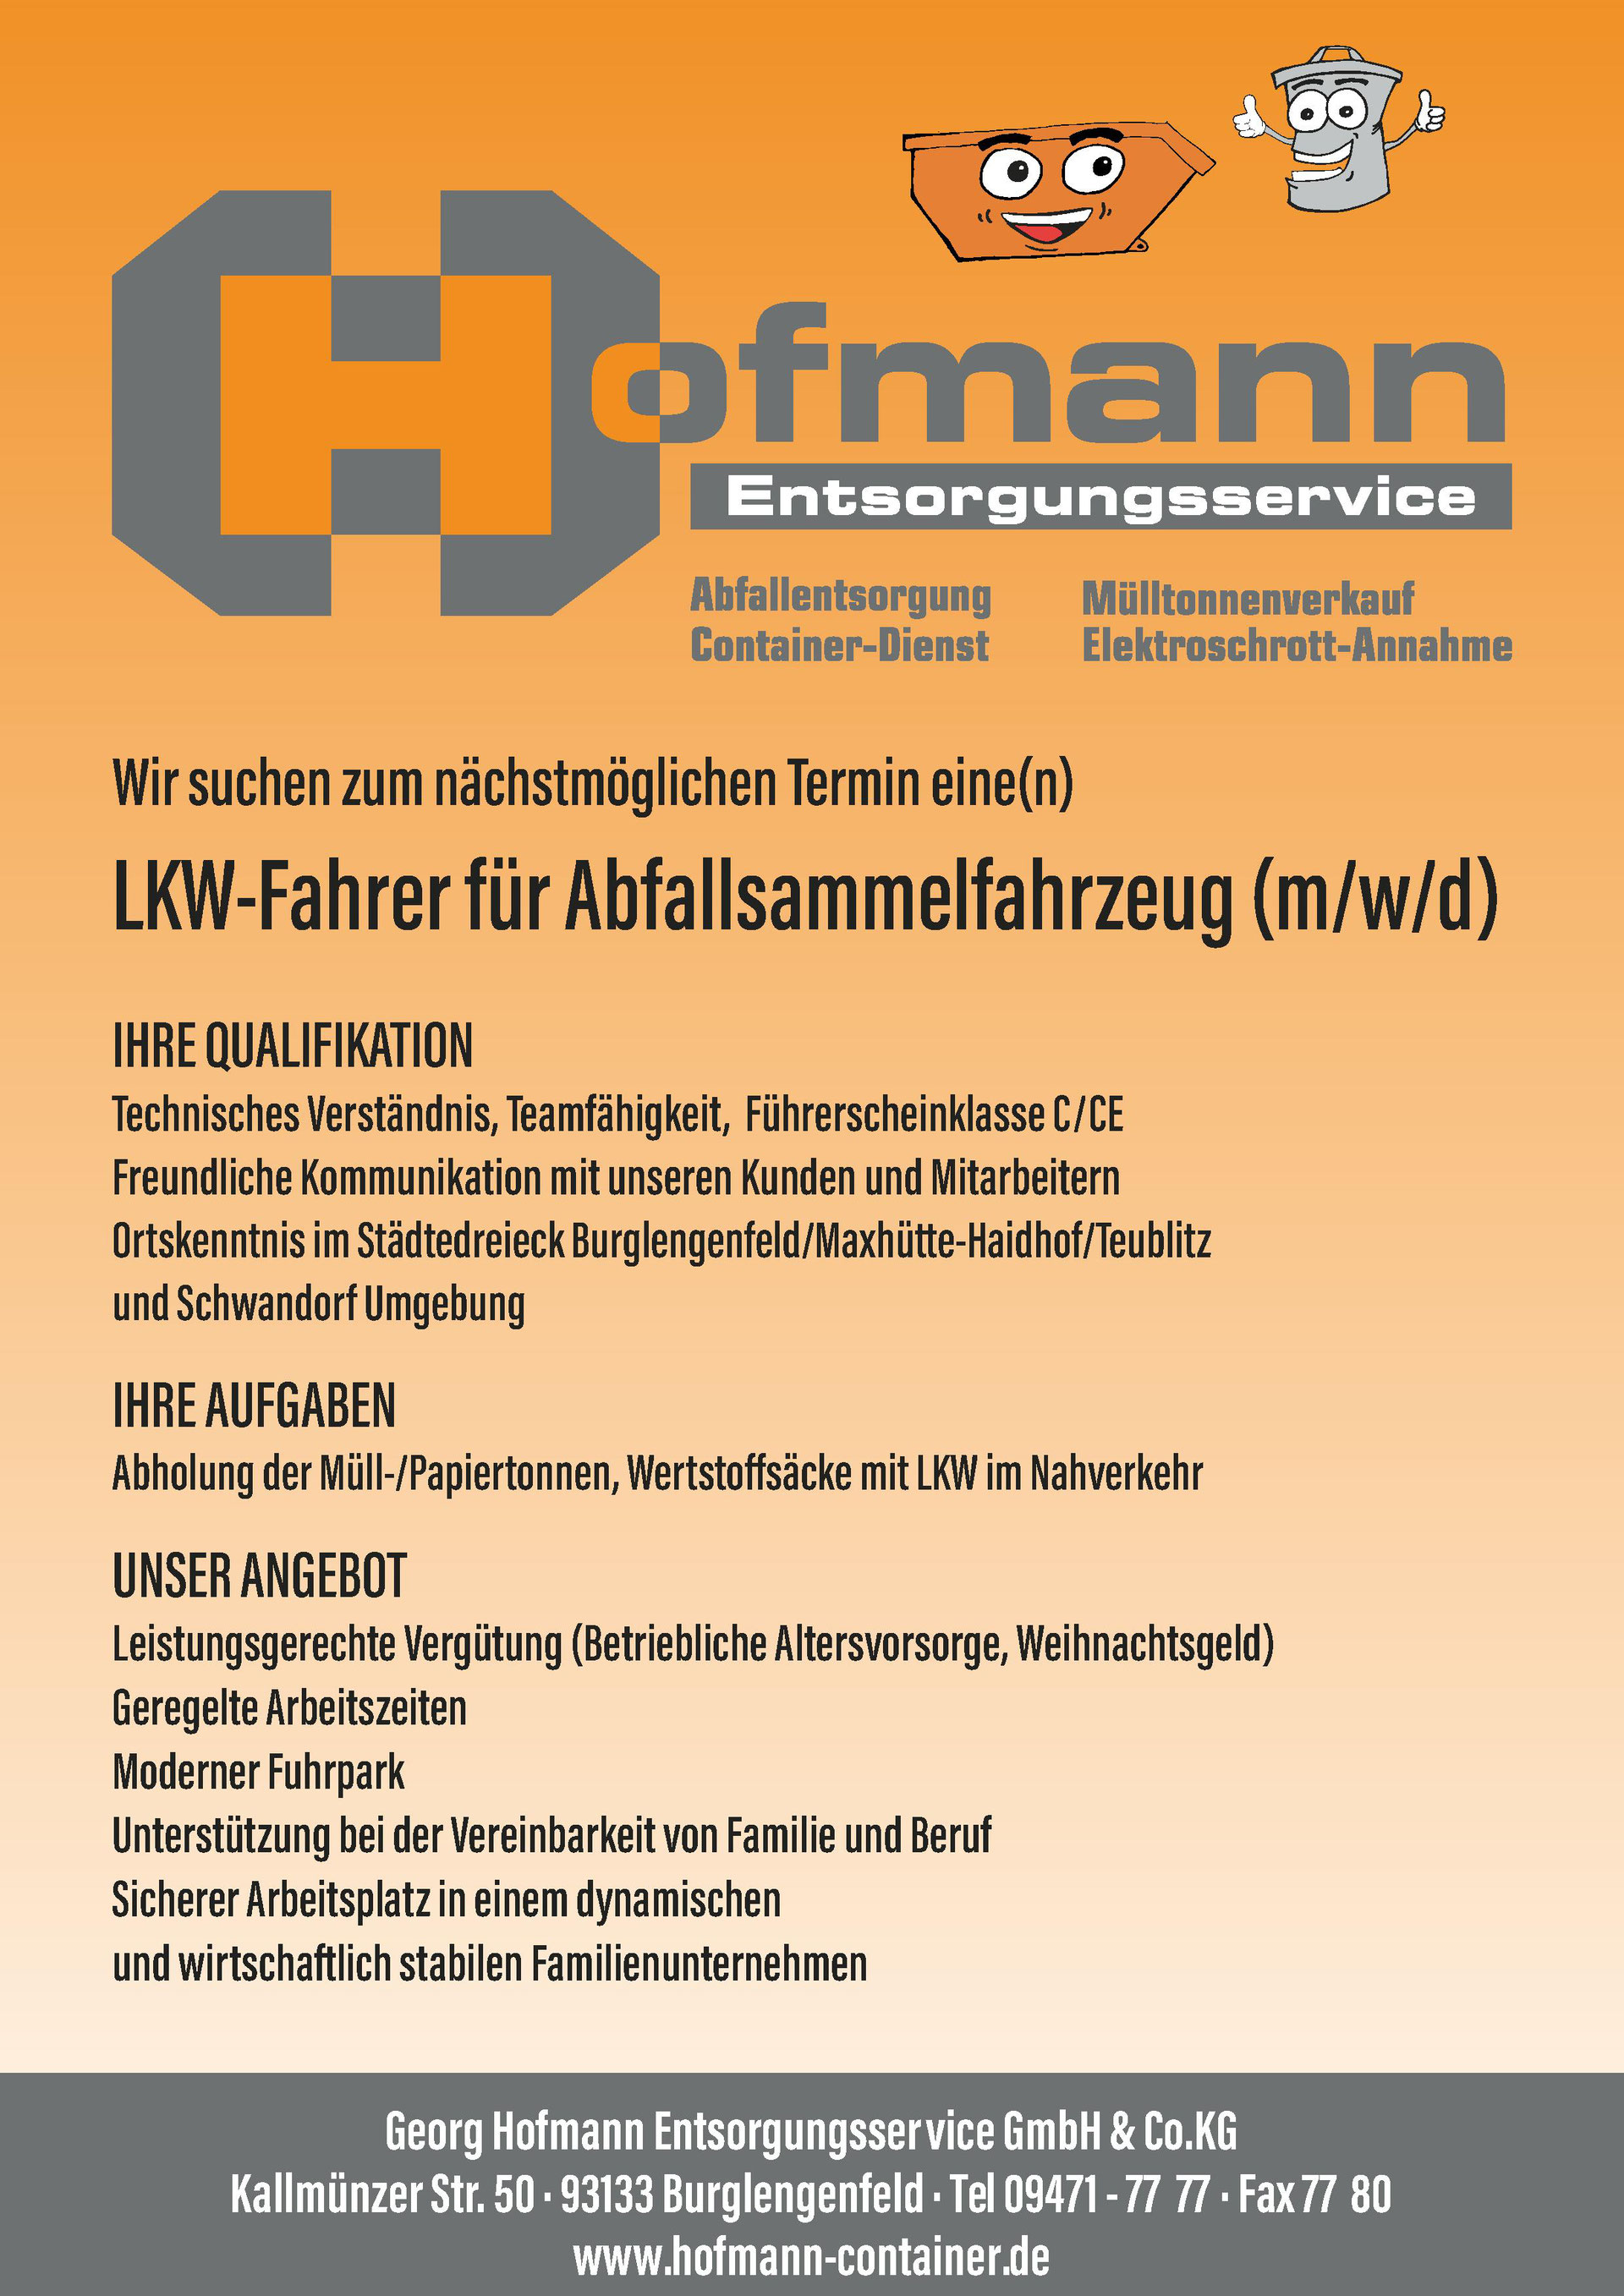 (c) Hofmann-container.de